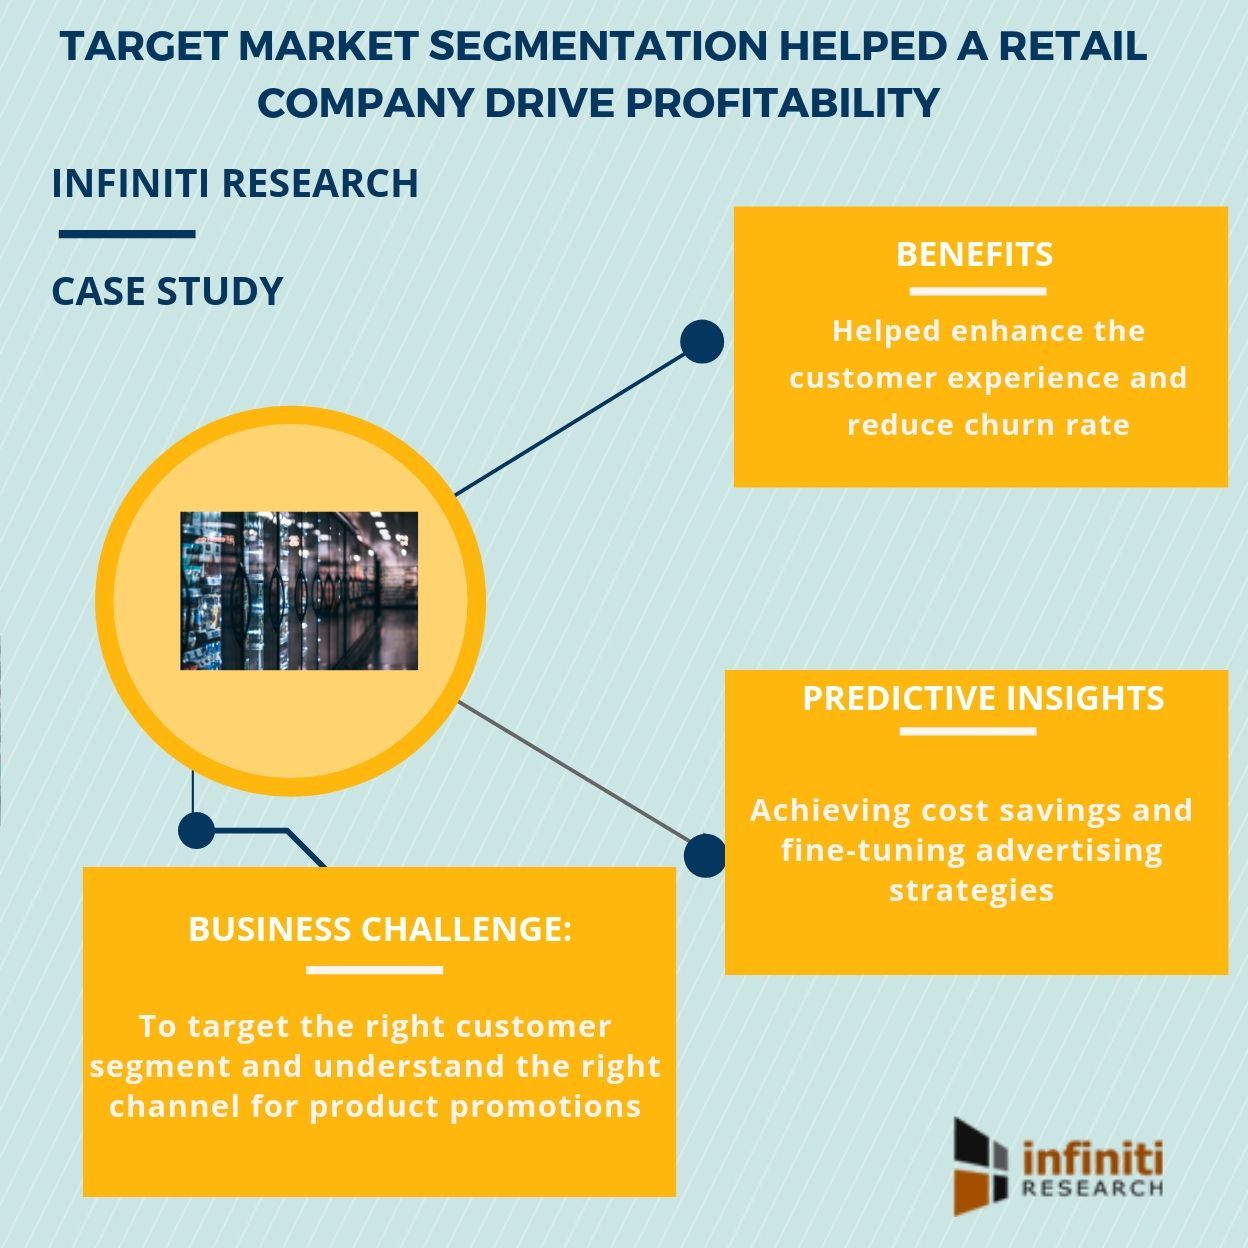 Target market segmentation